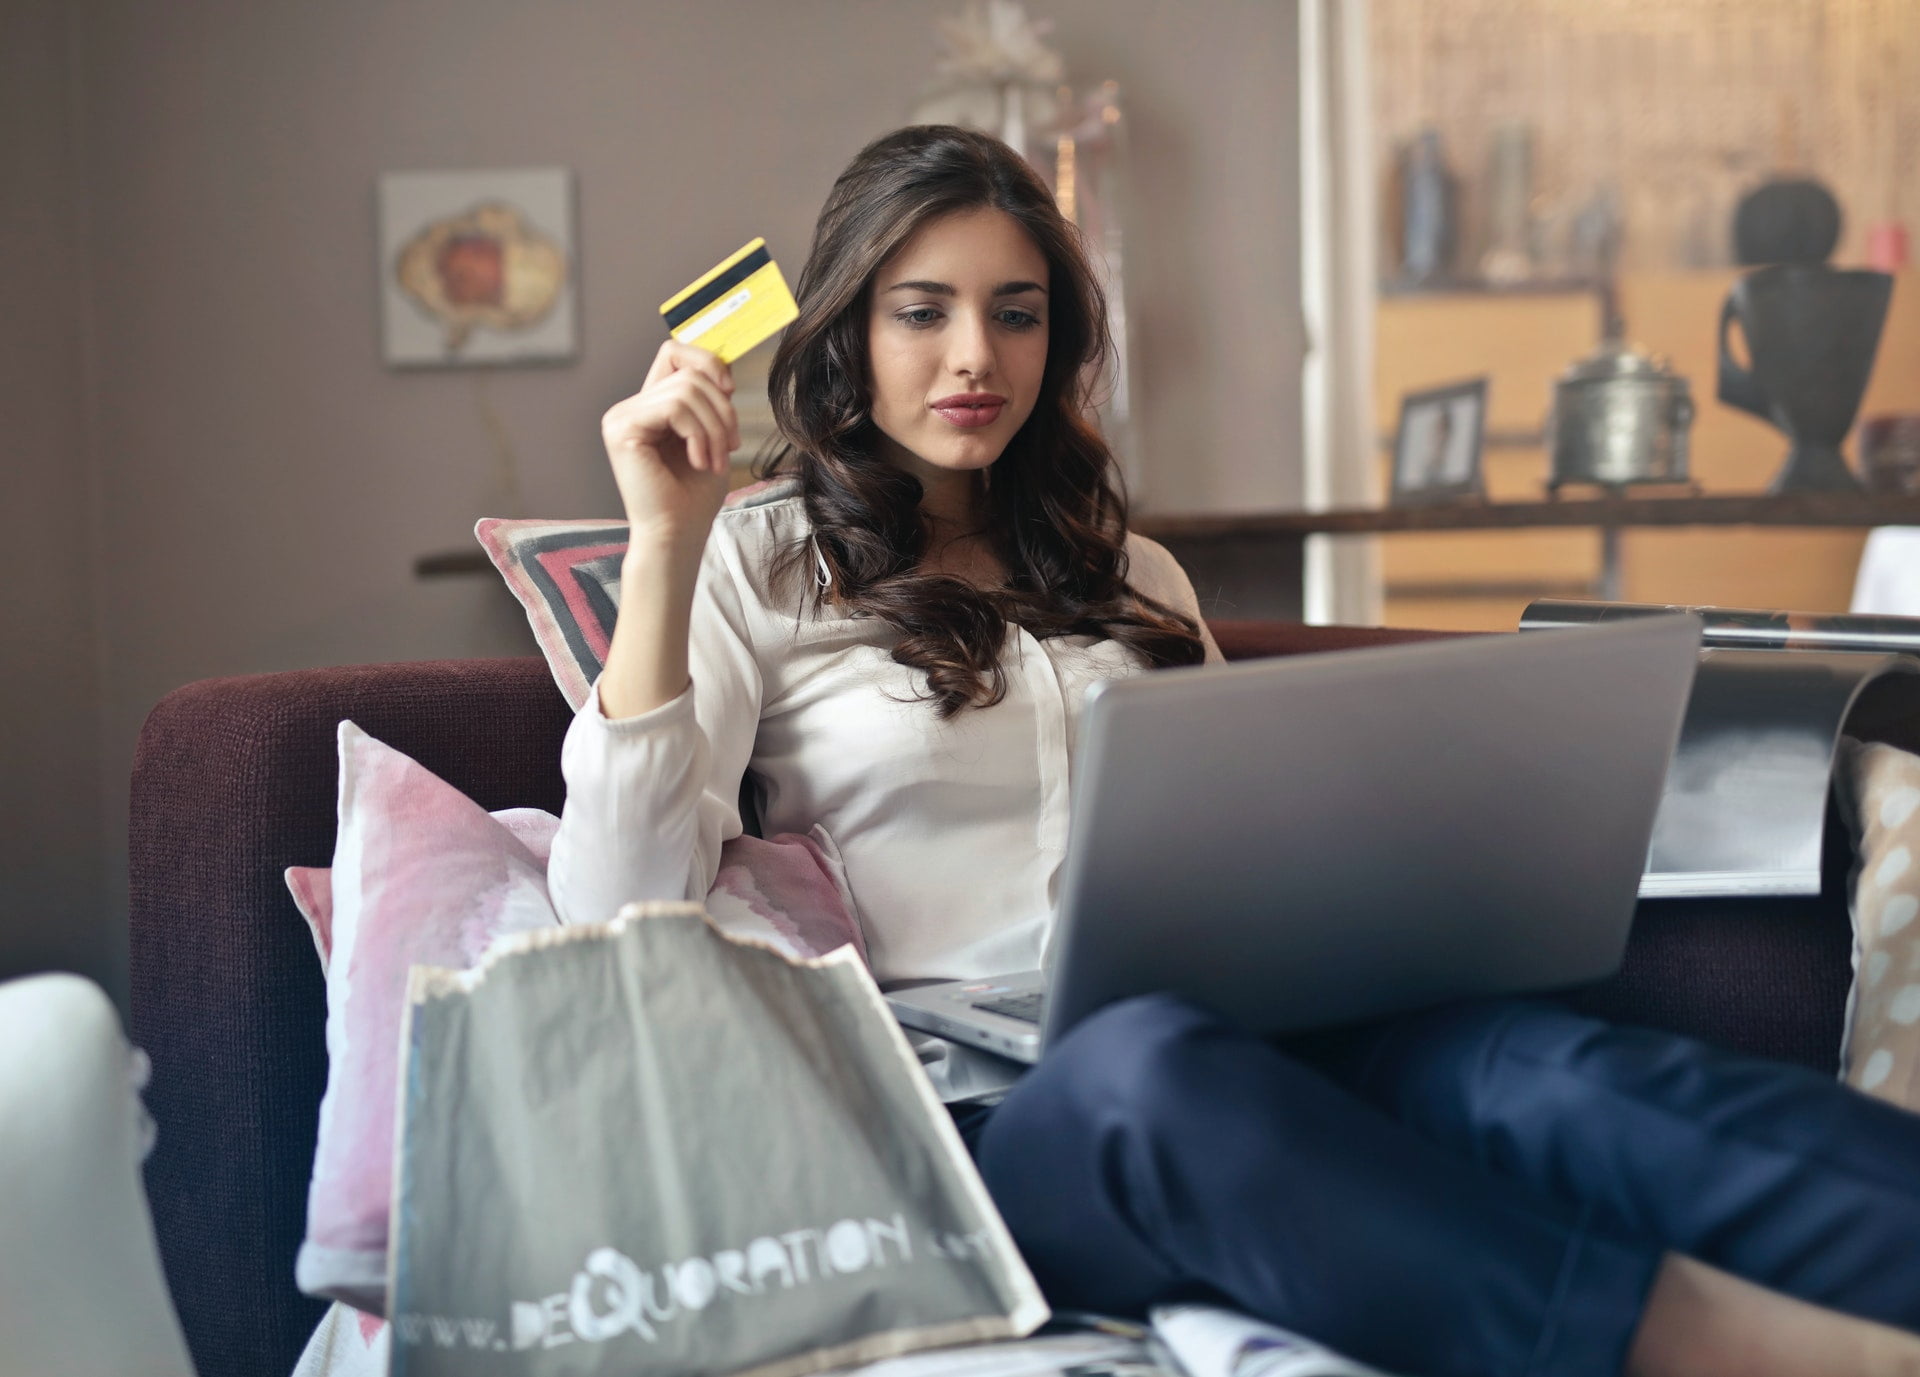 申辦 Momoshop 聯名富邦卡｜信用卡優惠 woman holding credit card while operating silver laptop